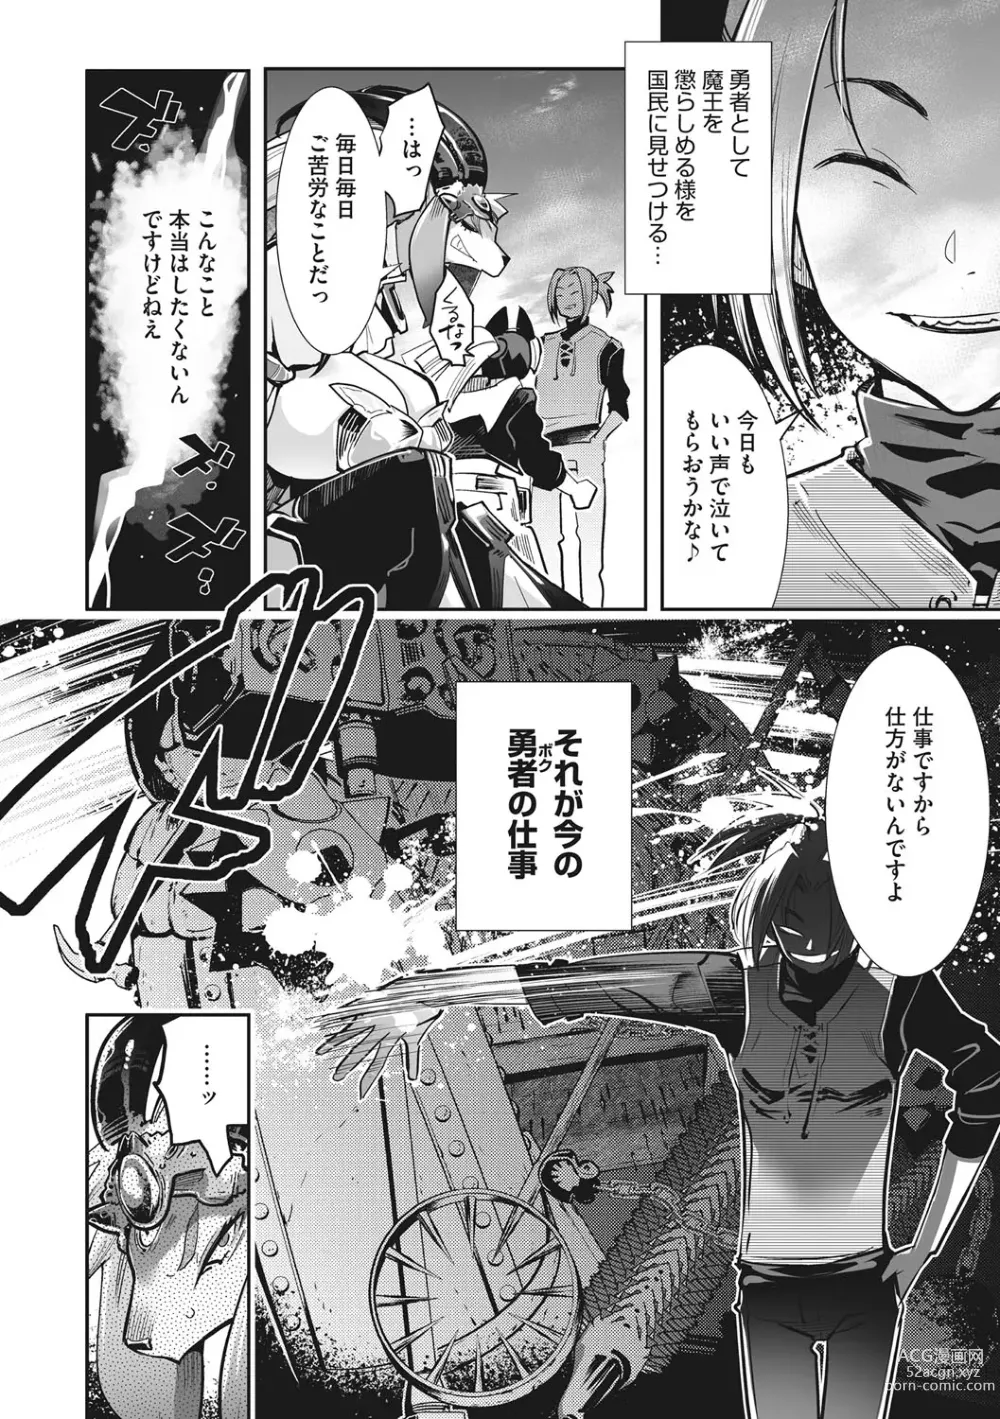 Page 9 of manga Kemono to Koishite Nani ga Warui!